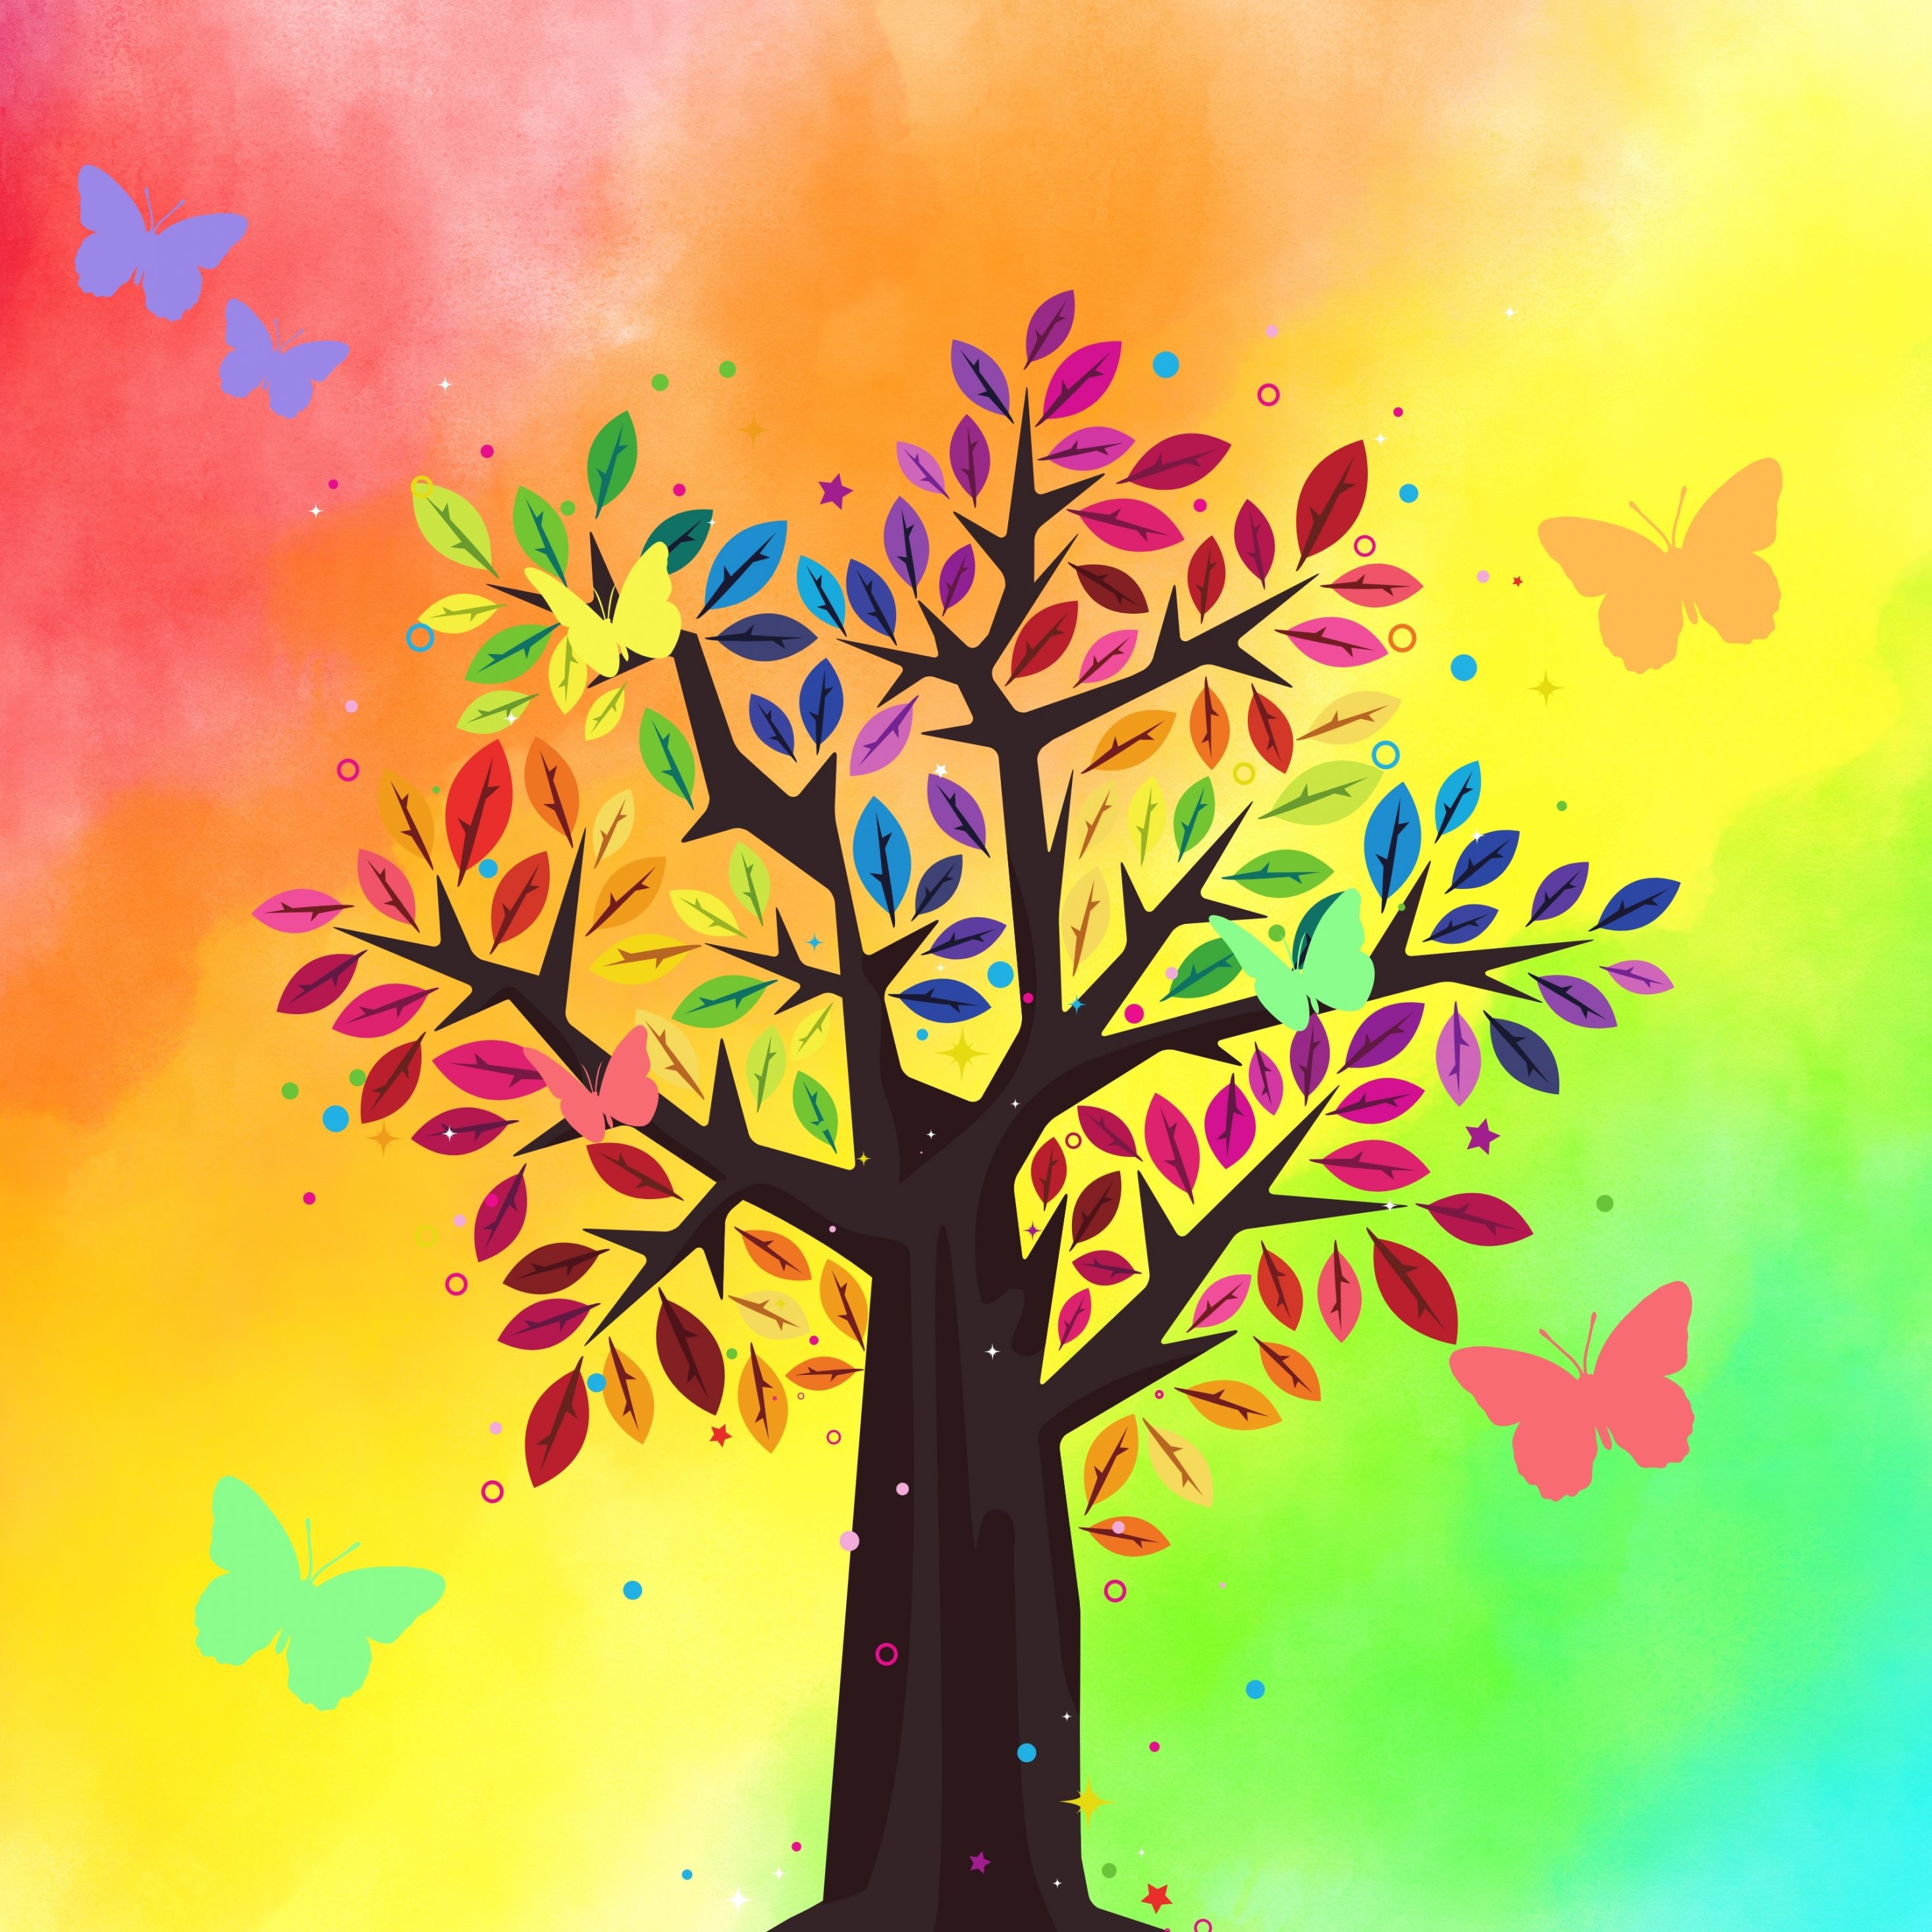 2934x2934 iOS iPad wallpaper 4k Tree Rainbow Colorful Butterfly iPad Wallpaper 2934x2934 pixels resolution